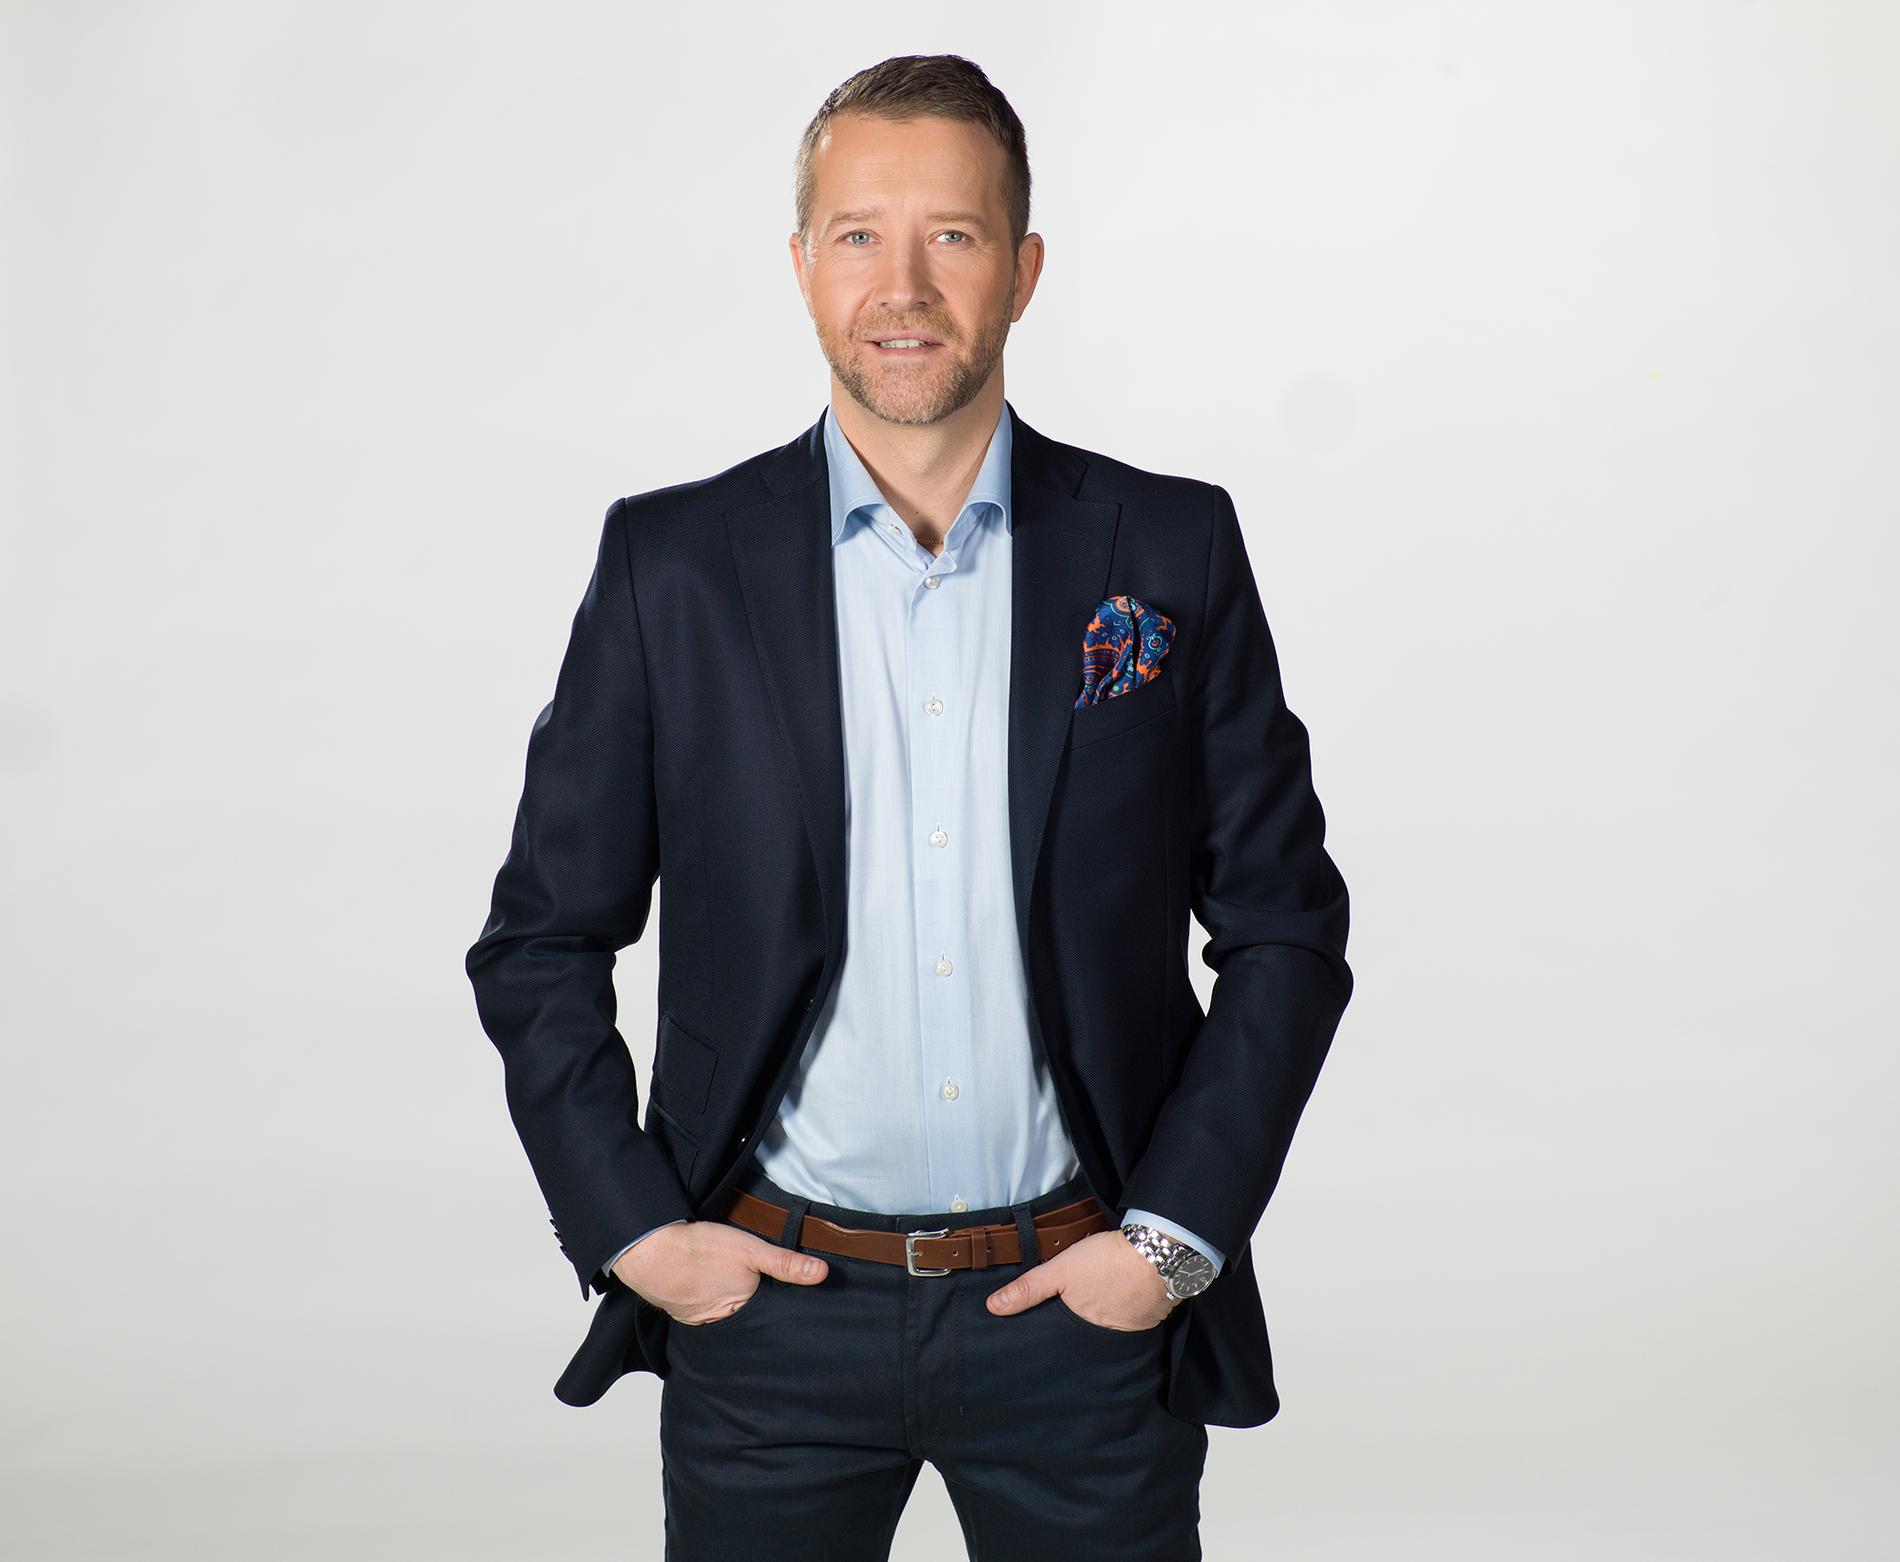 TV4-experten Anders Malmrot slutar i tv och blir ny sportchef på Solvalla